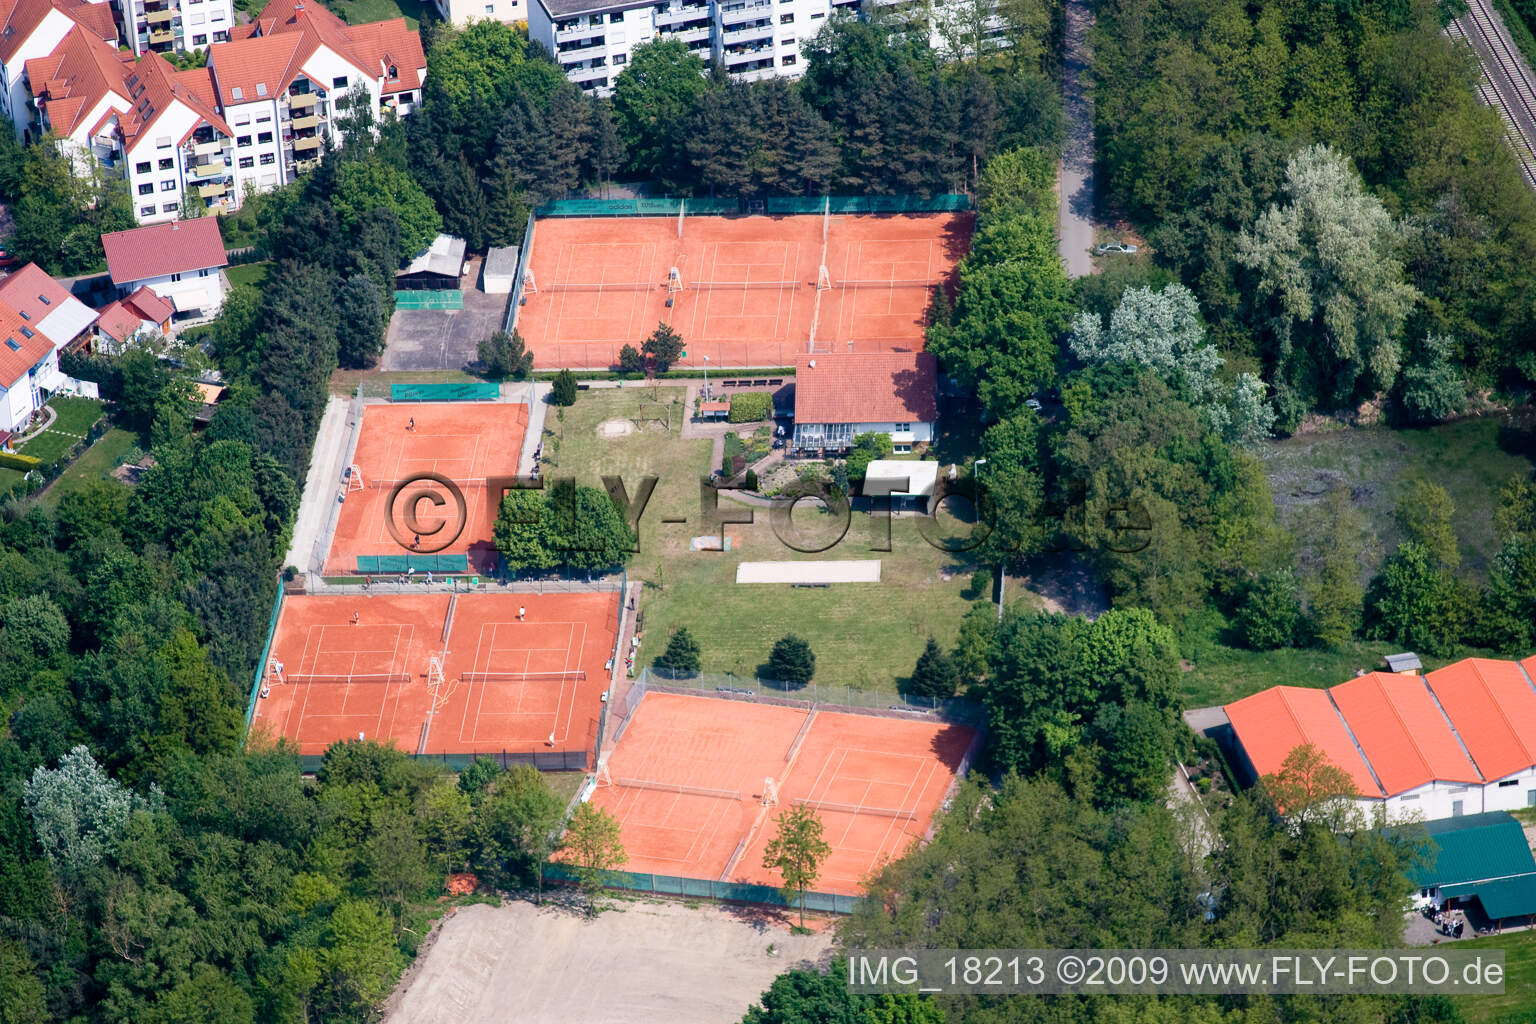 Vue aérienne de Terrain de tennis à Jockgrim dans le département Rhénanie-Palatinat, Allemagne